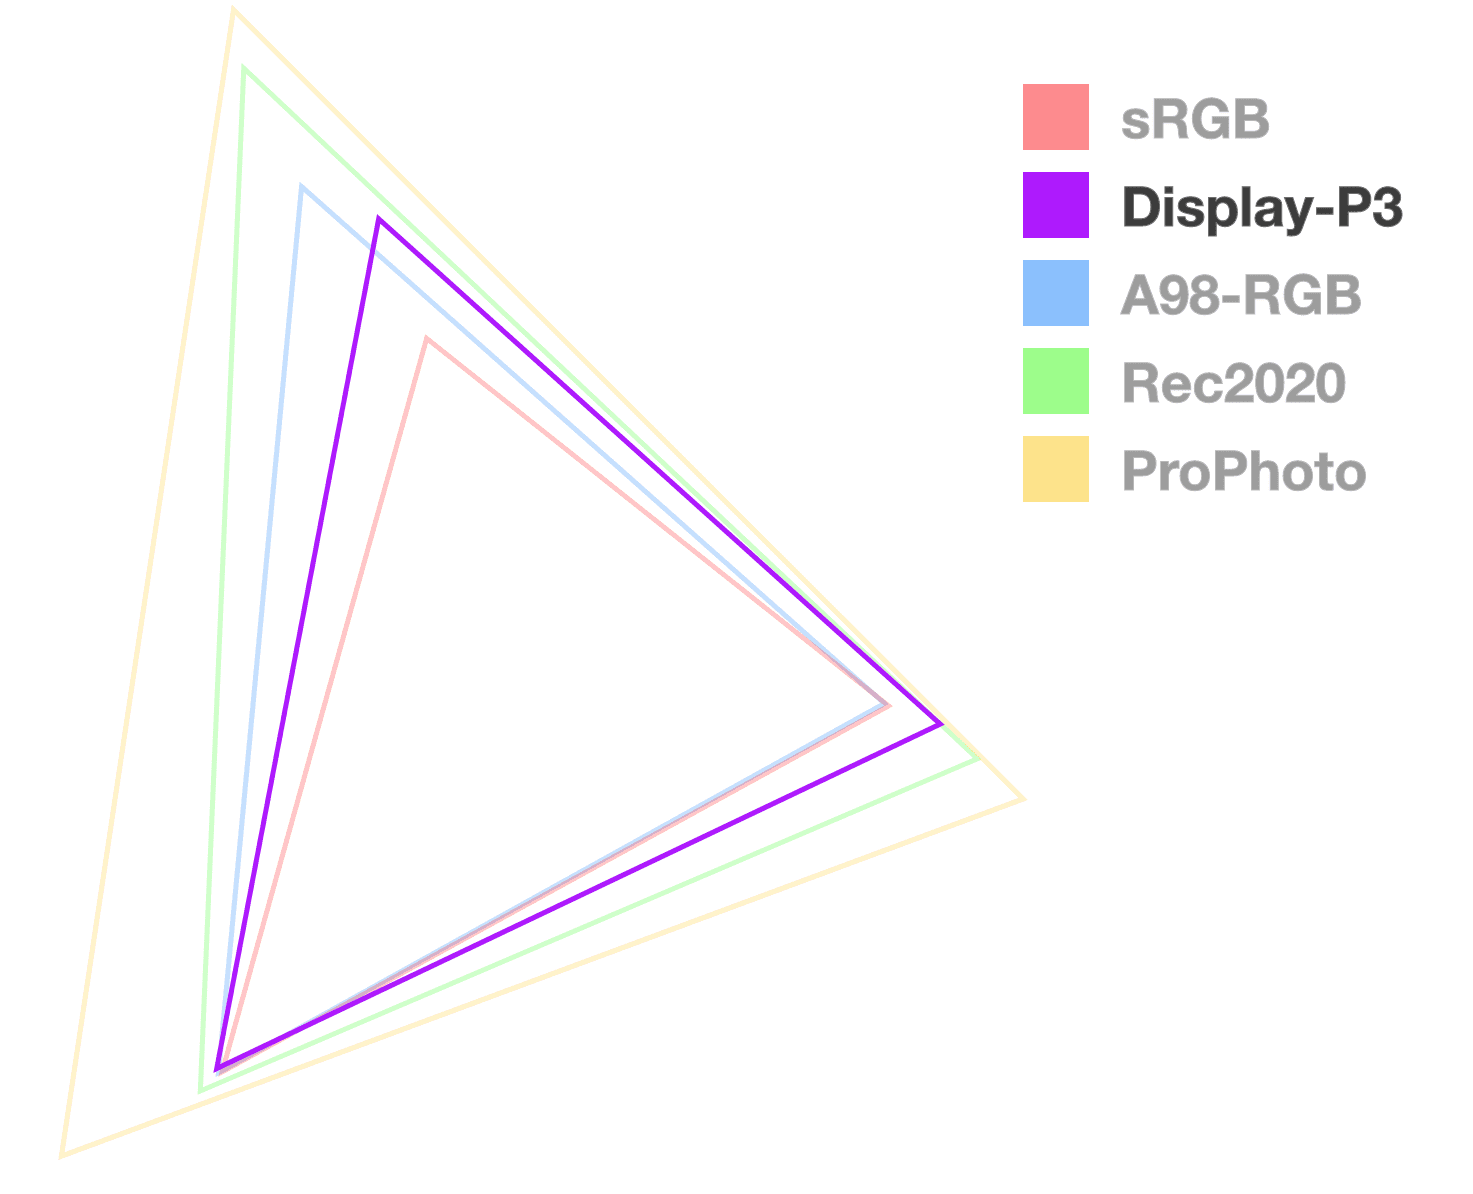 สามเหลี่ยมแสดง P3 เป็นเพียงสามเหลี่ยมเดียวที่ทึบแสงเต็มที่ซึ่งช่วยให้เห็นภาพขนาดของขอบเขต ดูเหมือนจะเป็นอันดับ 2 จากเล็กสุด